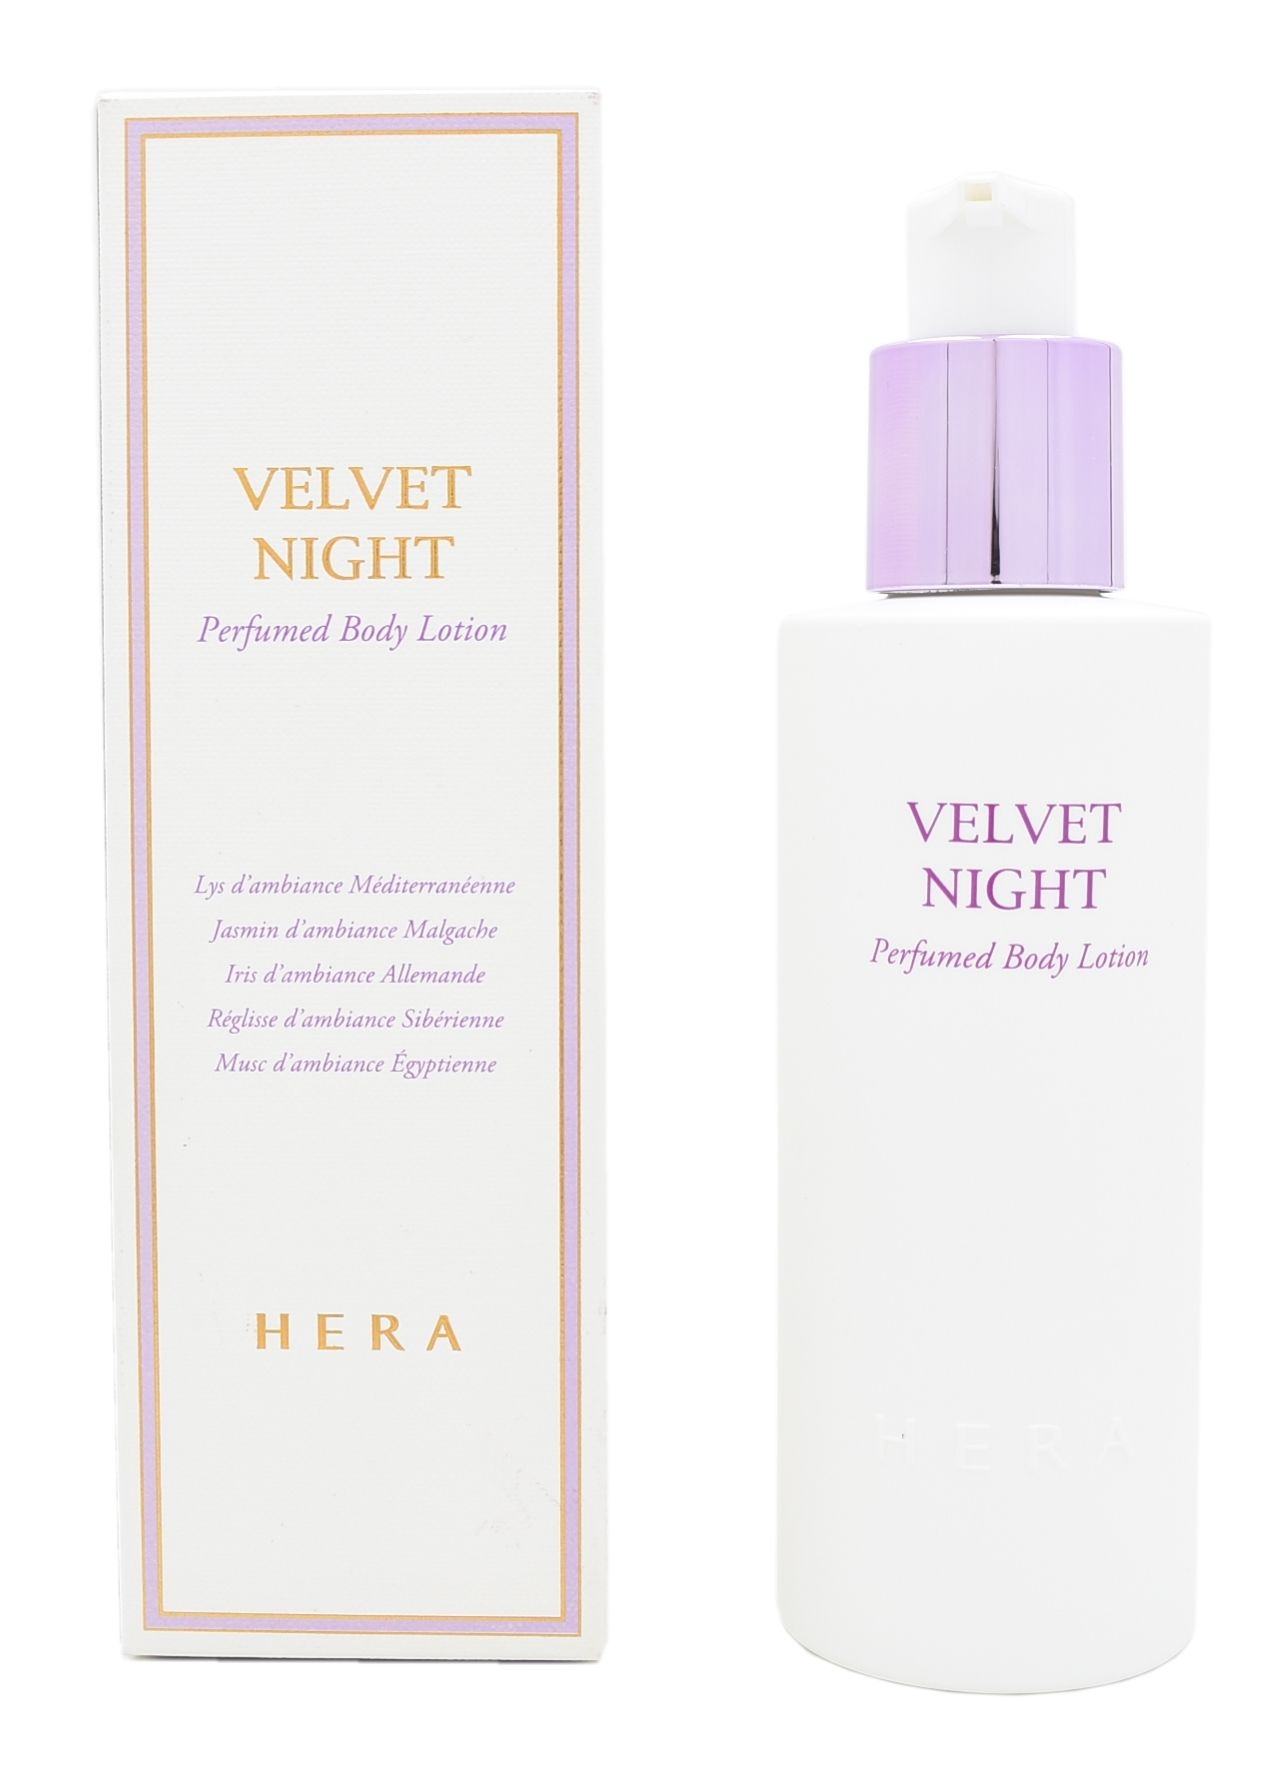 Velvet night perfumed body lotion